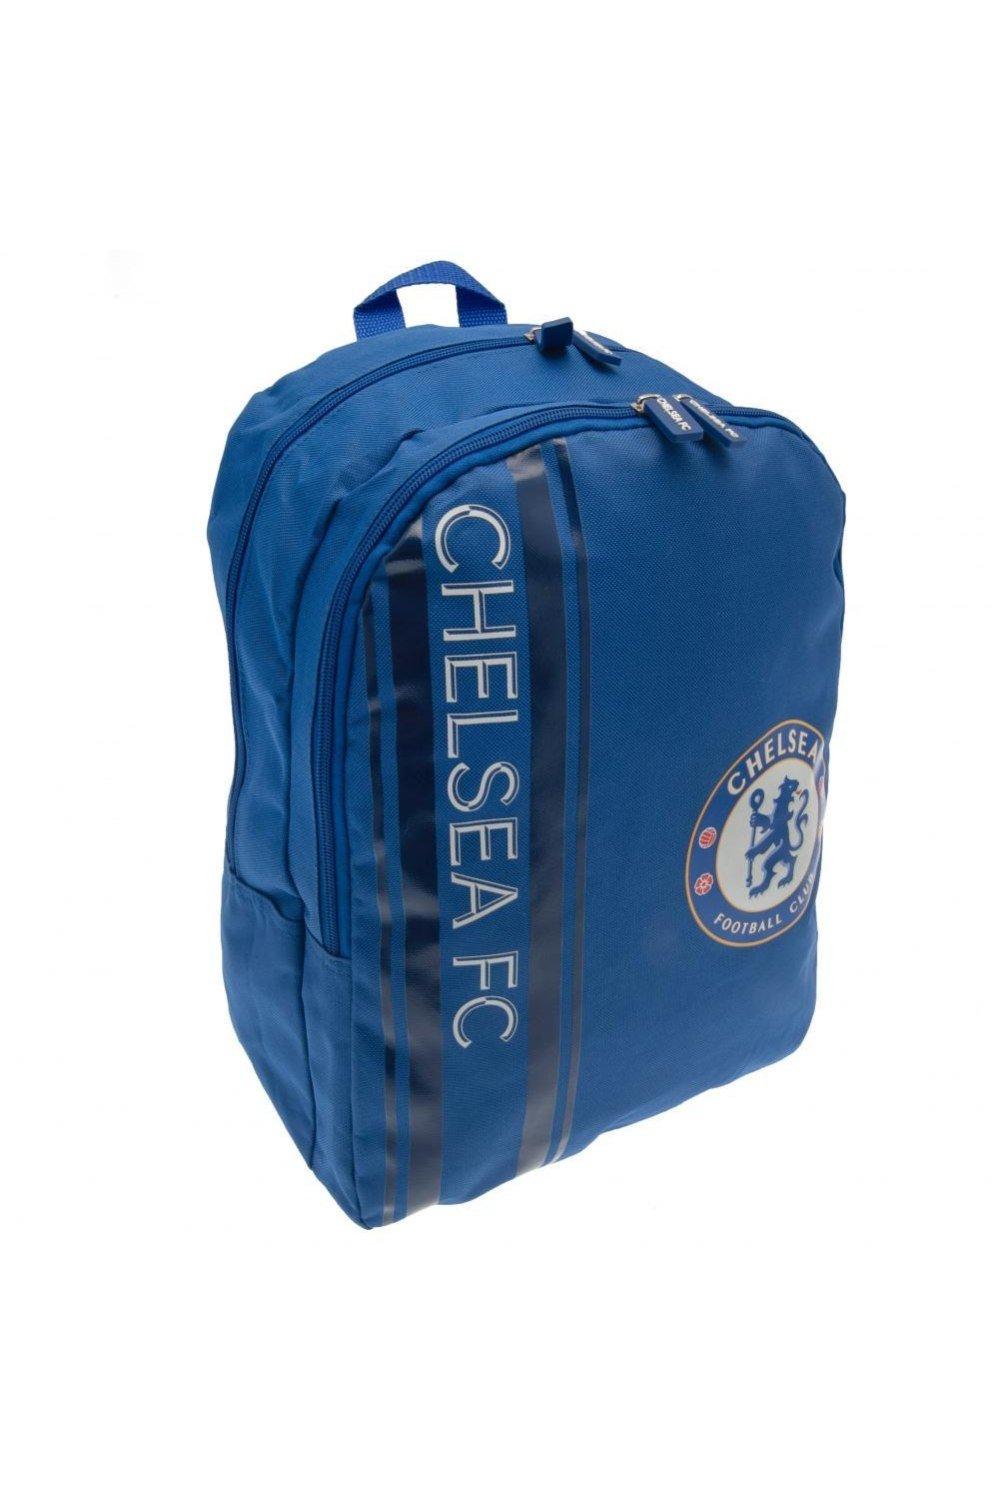 Рюкзак Chelsea FC, синий chelsea fc